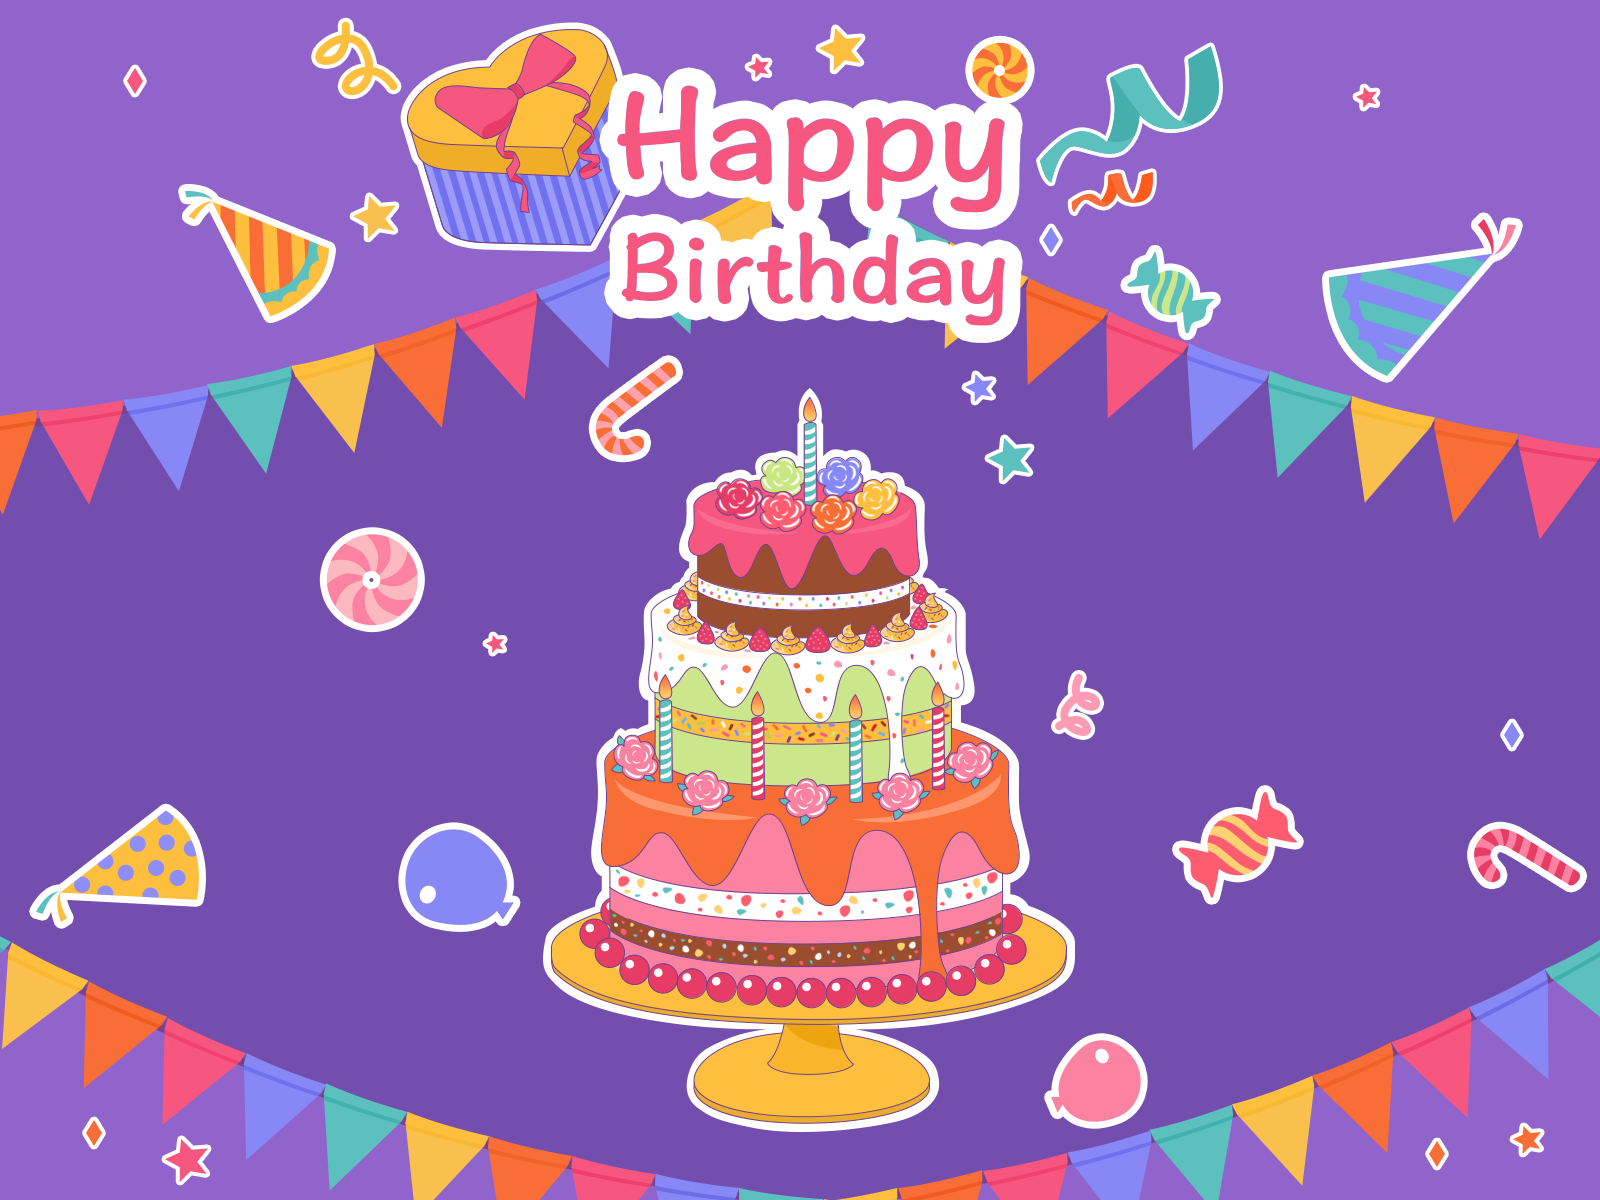 Happy Birthday Cake by Endi Chen on Dribbble